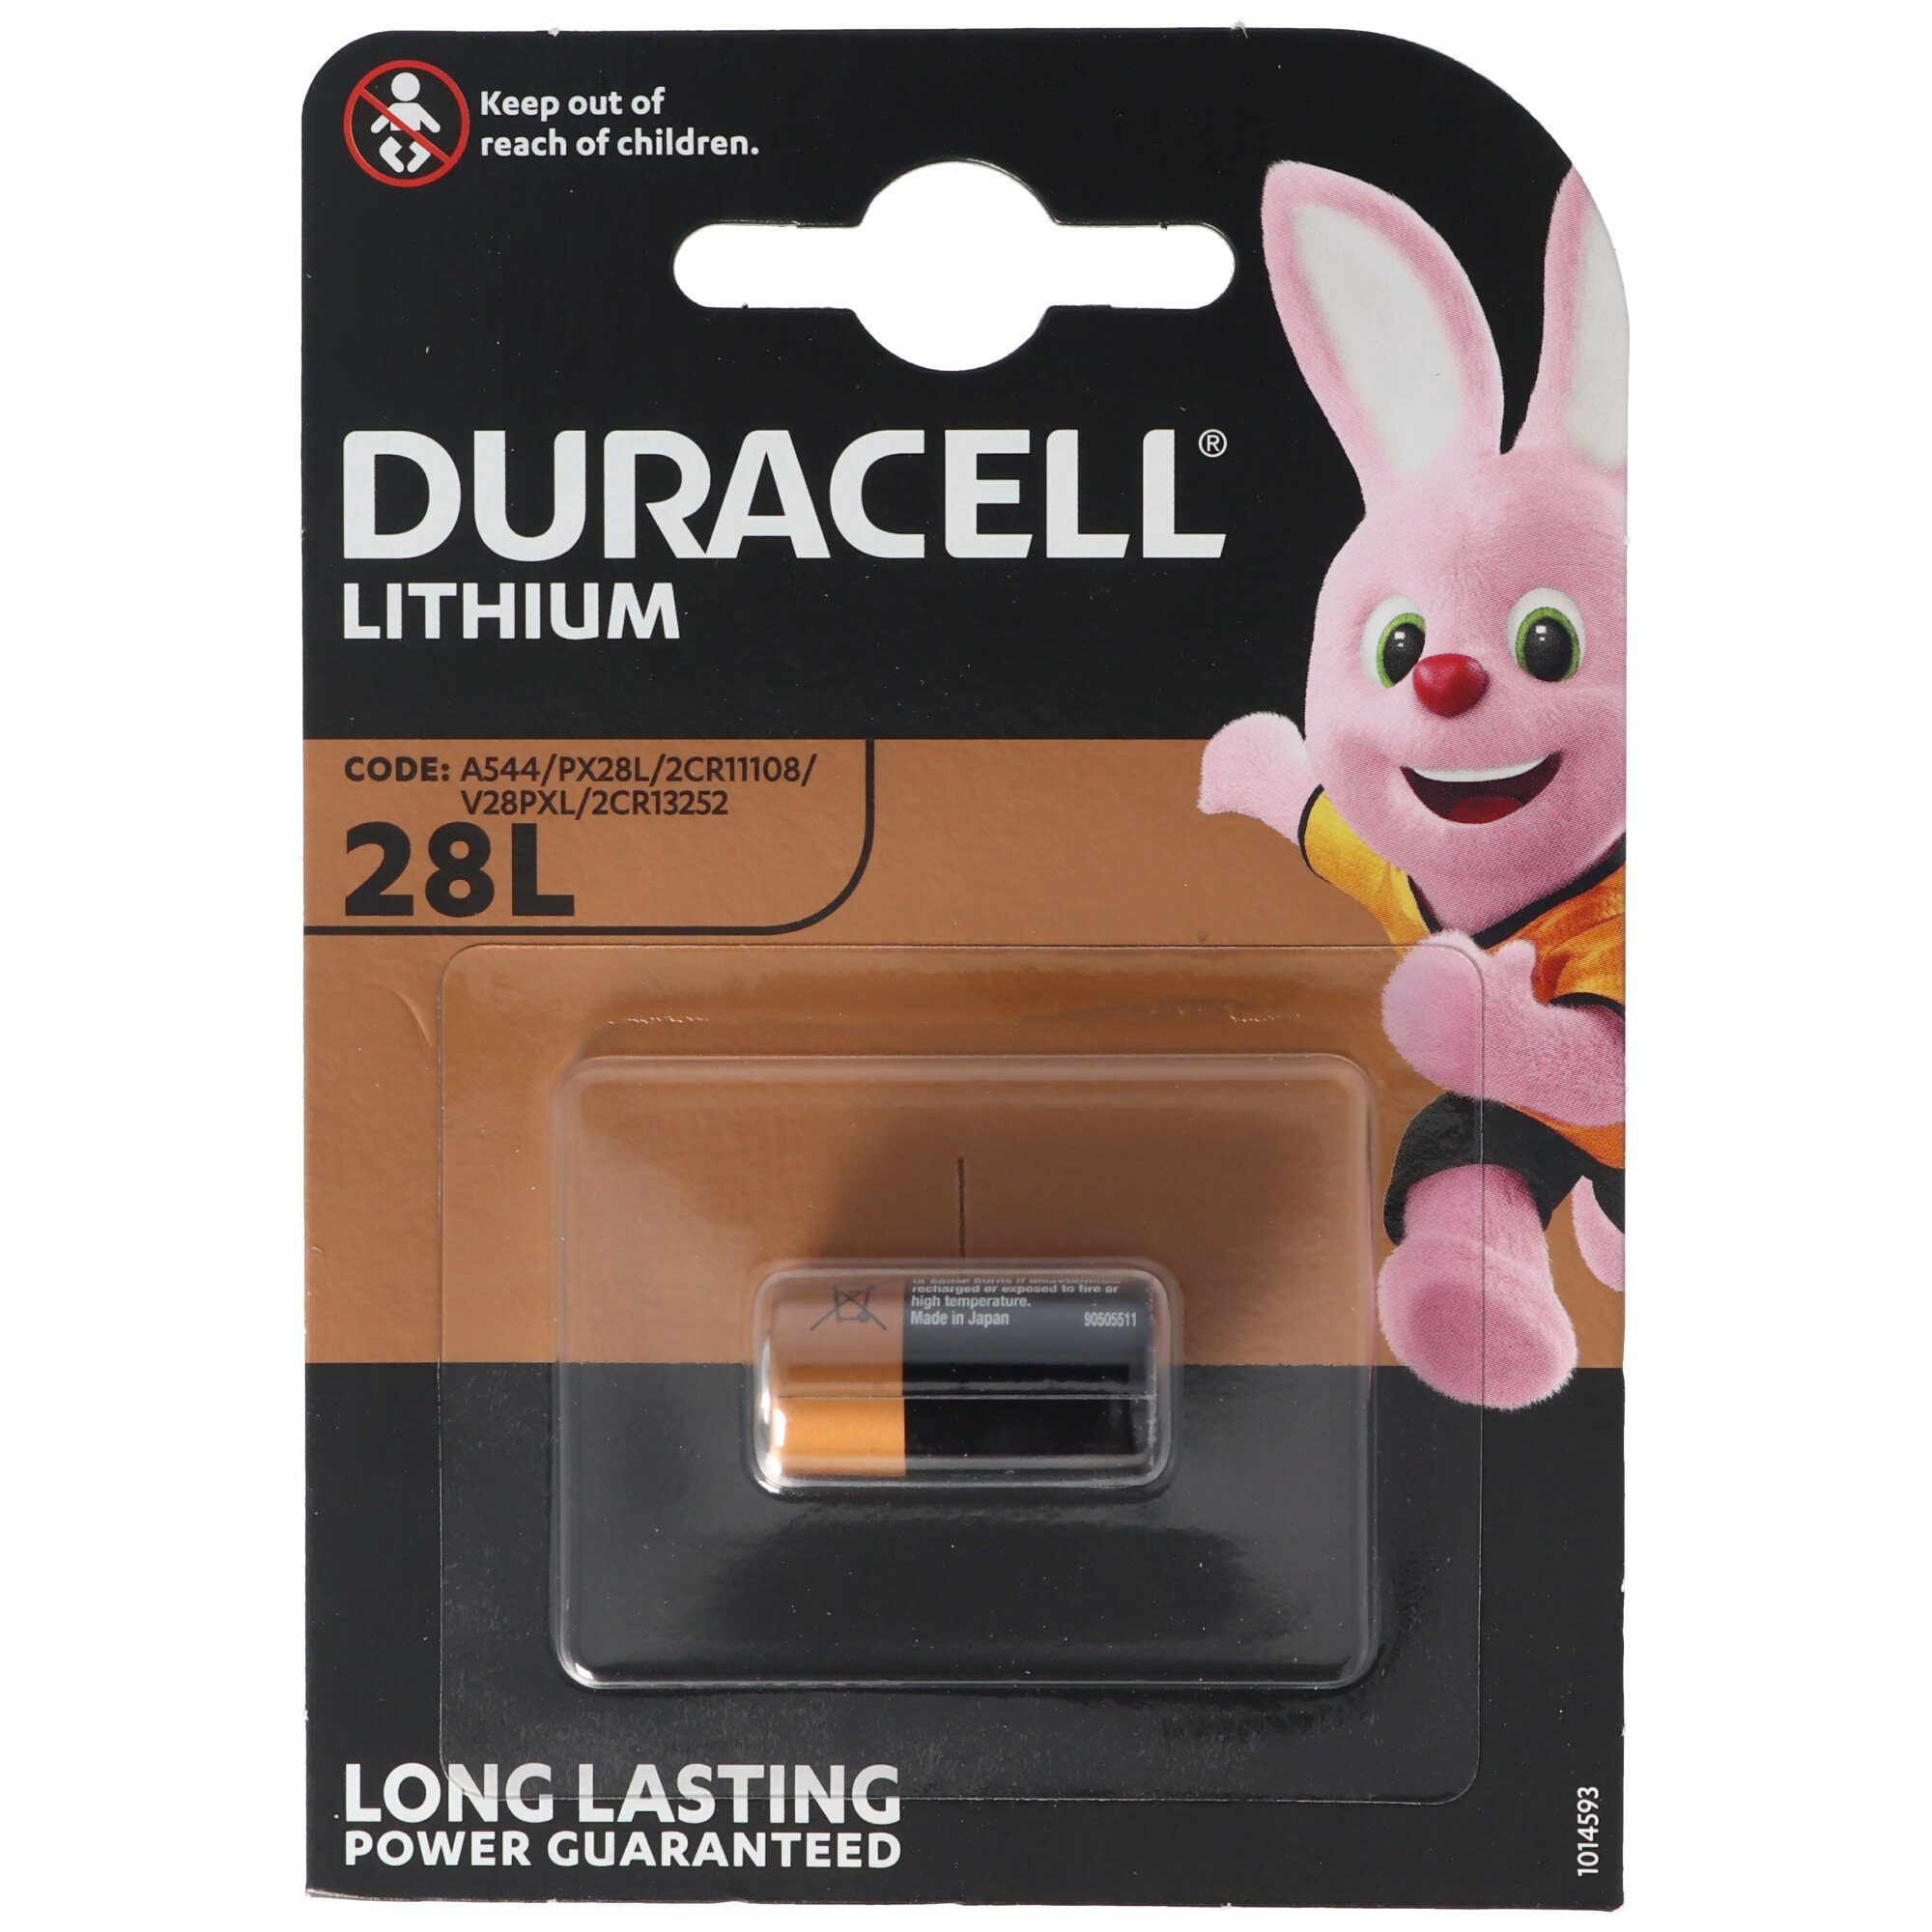 Duracell (6,0 Photobatterie 2CR13252, V) Duracell 150mAh, 6V 2CR11108, PX28L Lithium L Fotobatterie,